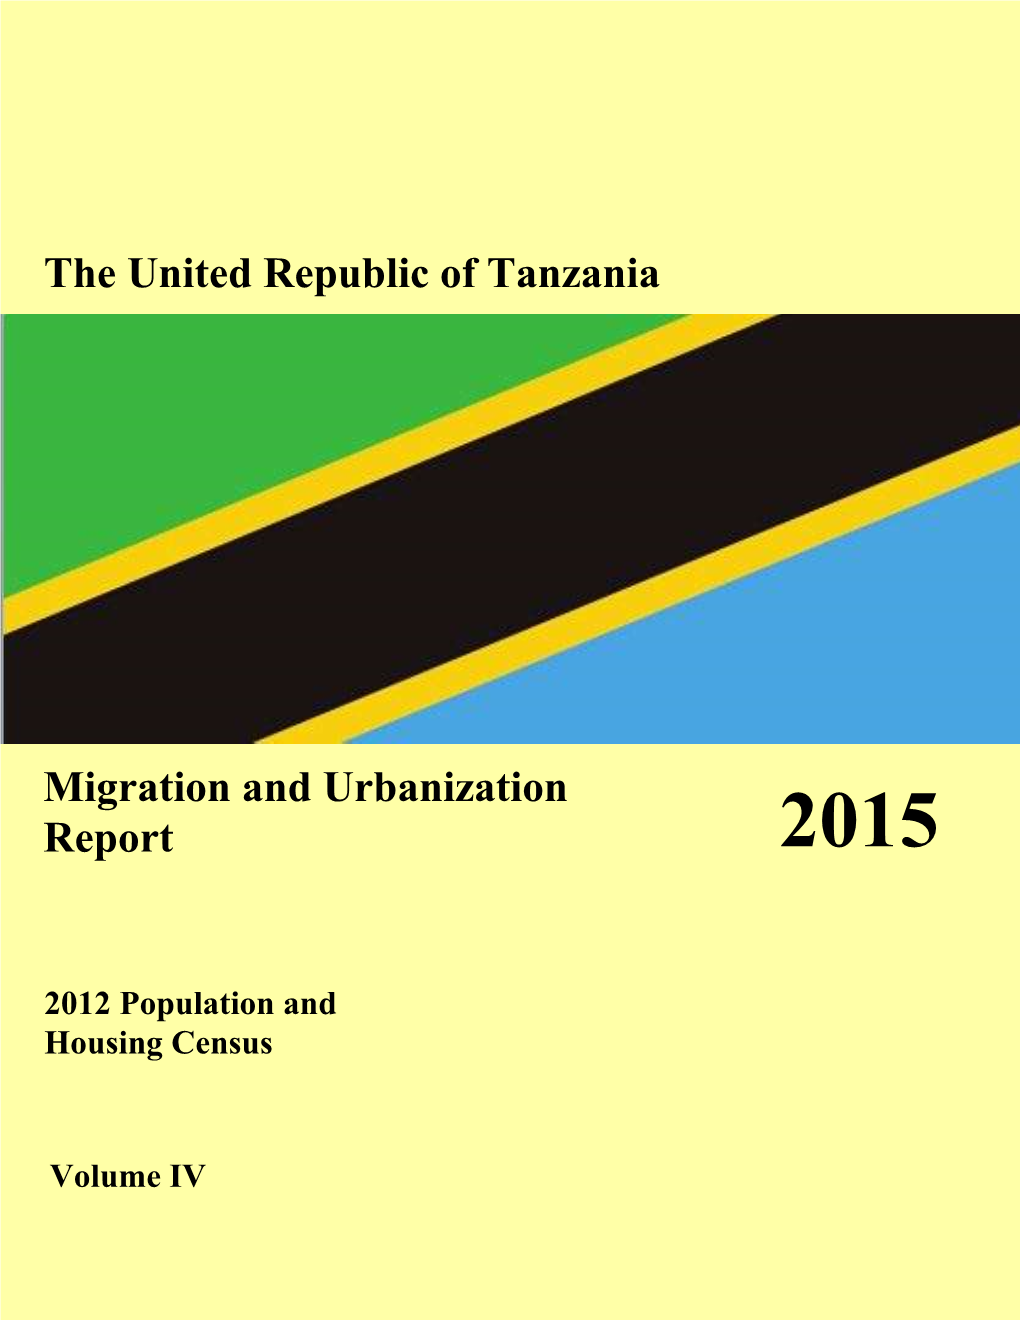 The United Republic of Tanzania Migration and Urbanization Report